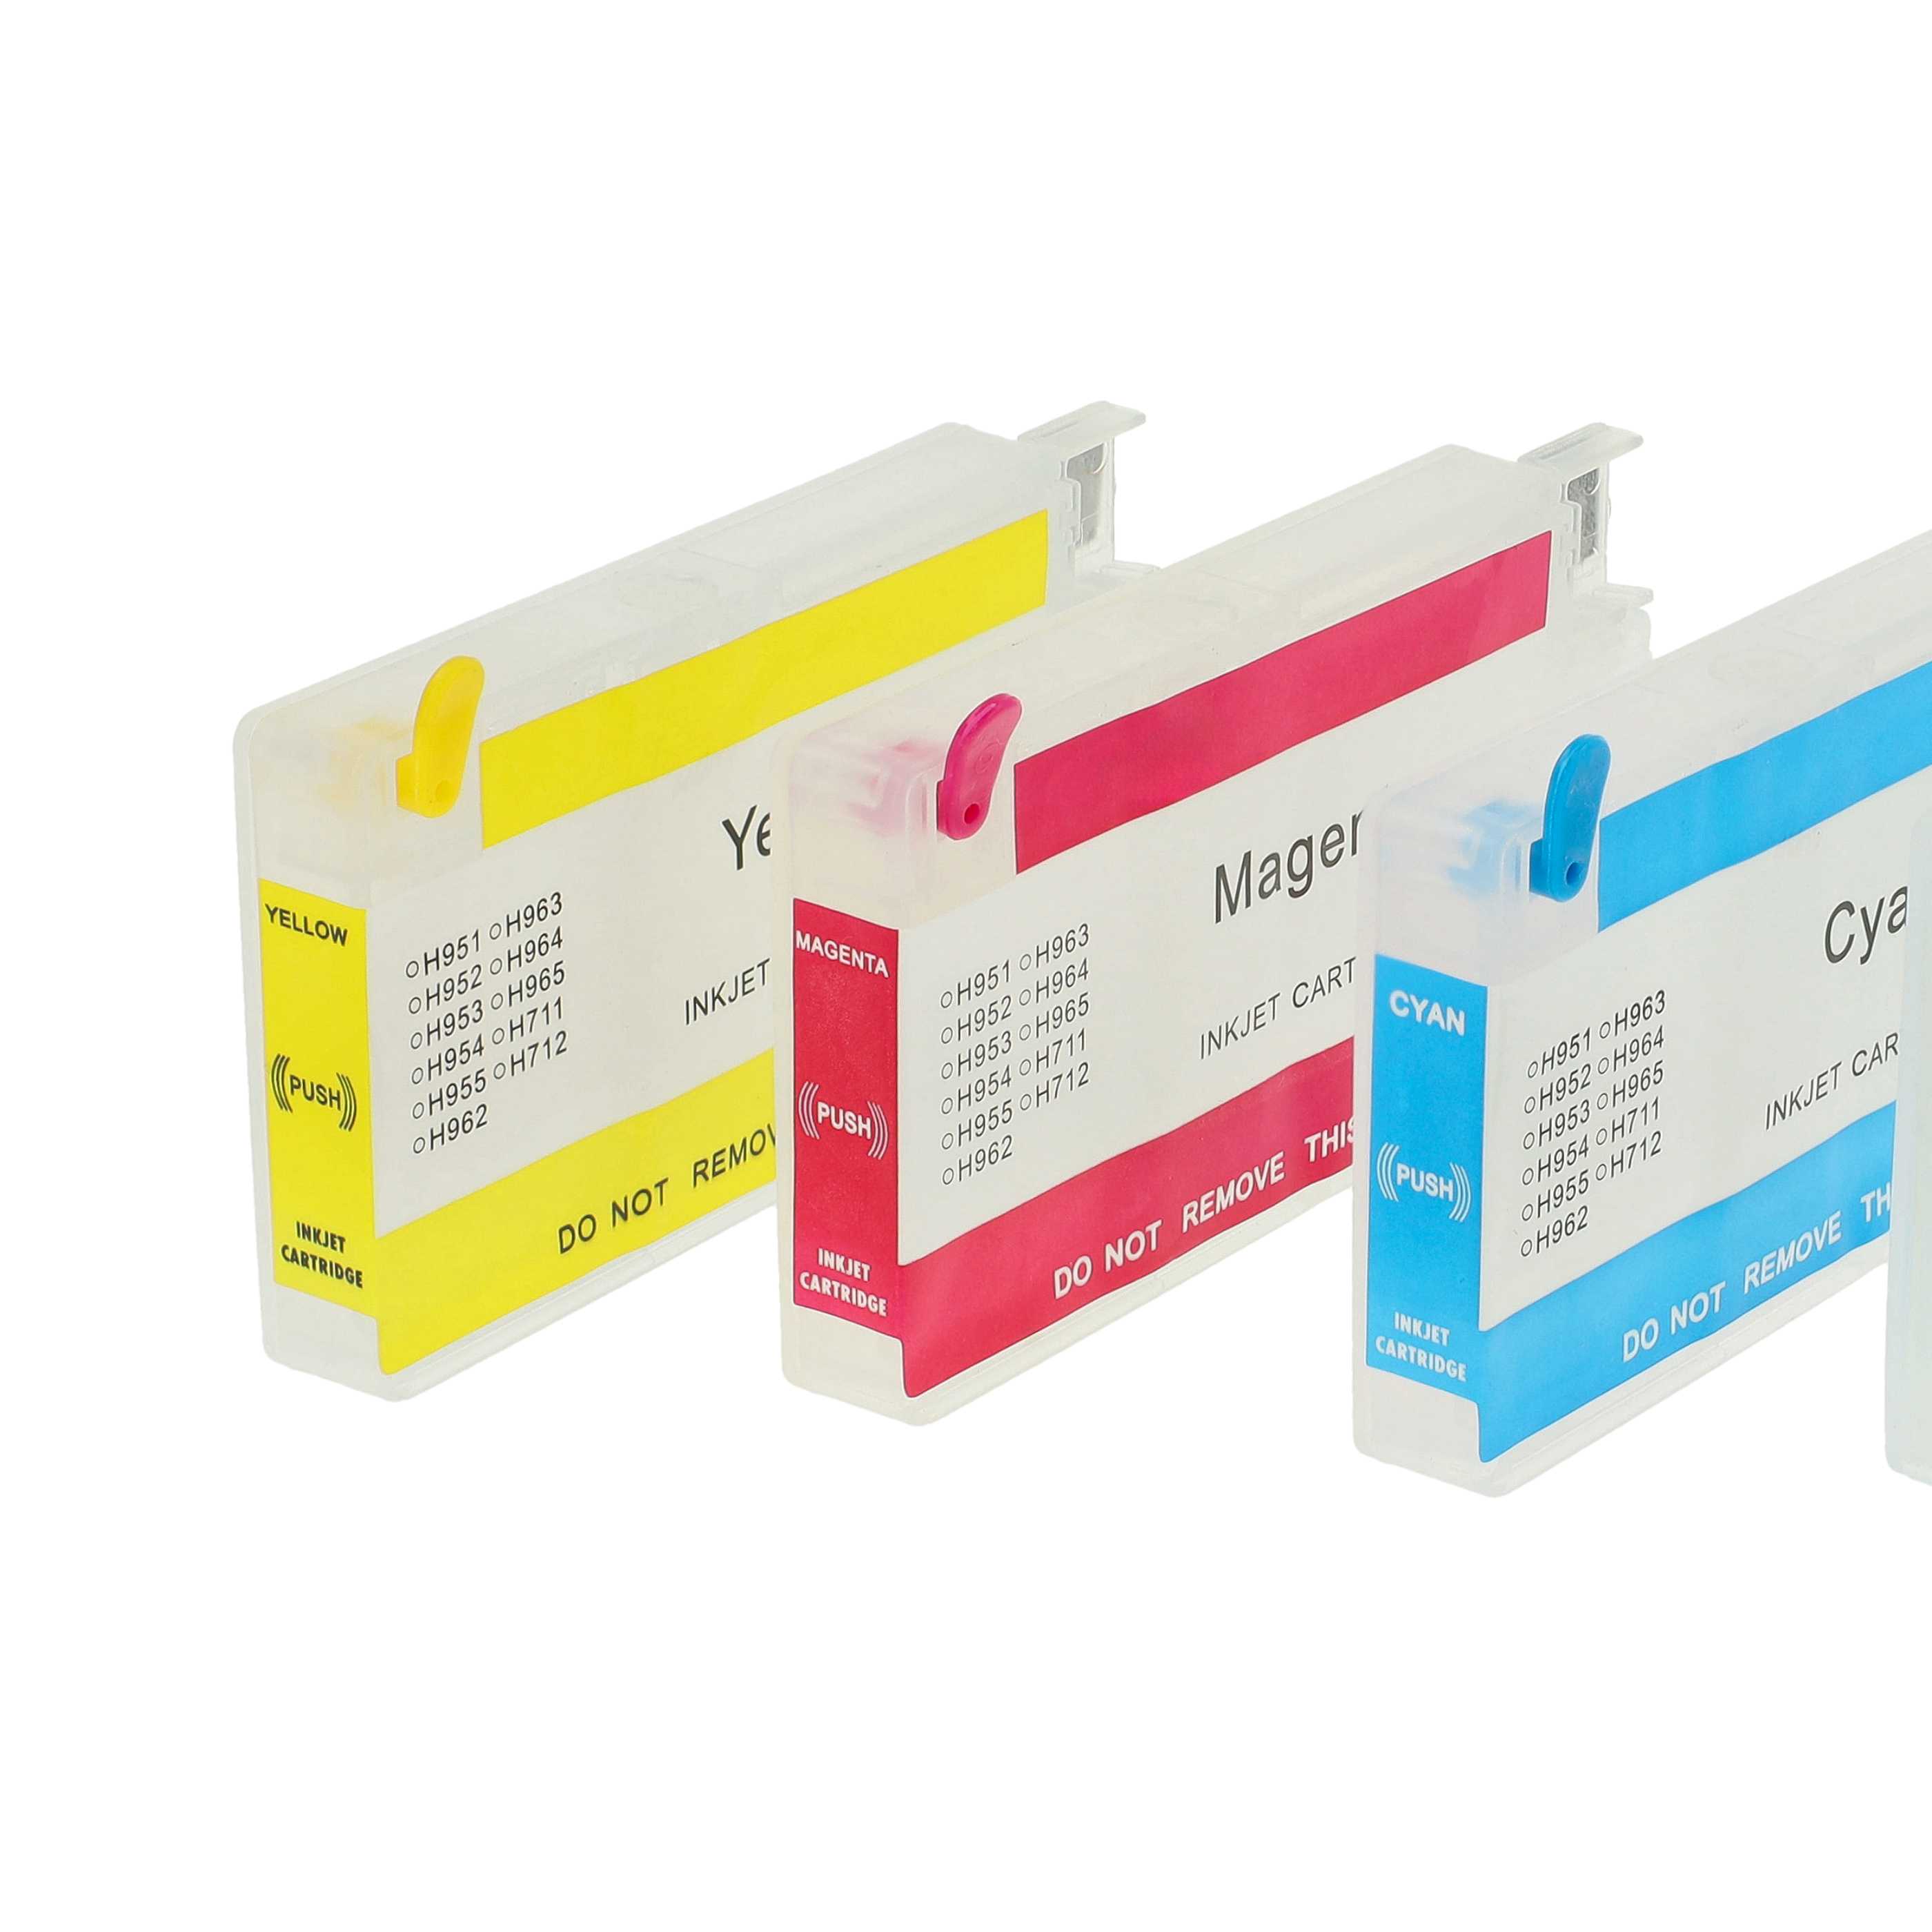 4x Cartouches remplace HP 950, 951, 950XL, 951XL pour imprimante CISS HP - B/C/M/Y + puce